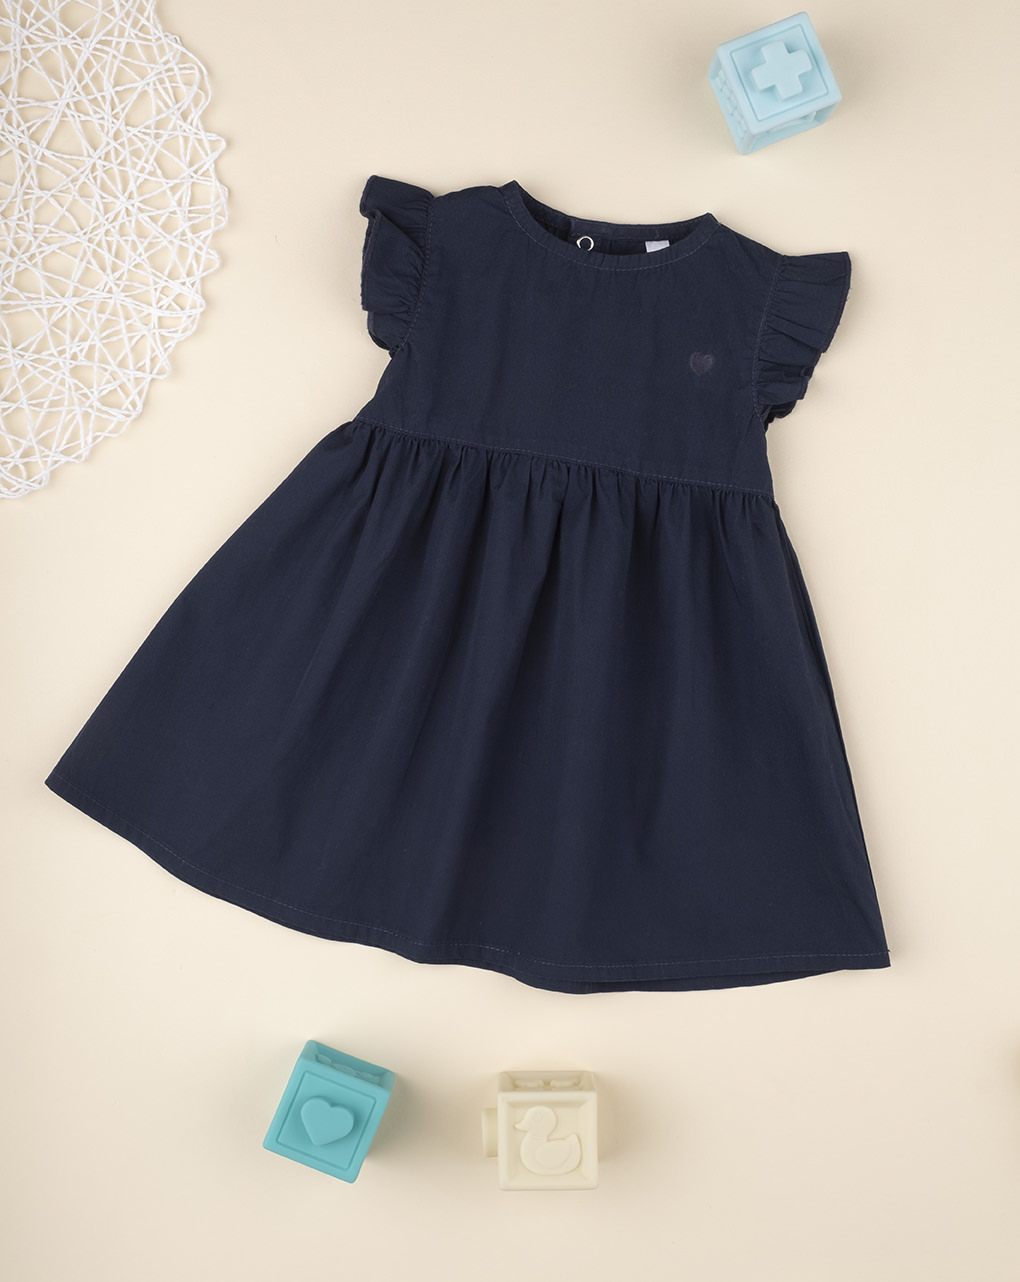 βρεφικό φόρεμα μπλε με καρδούλα για κορίτσι - Prénatal